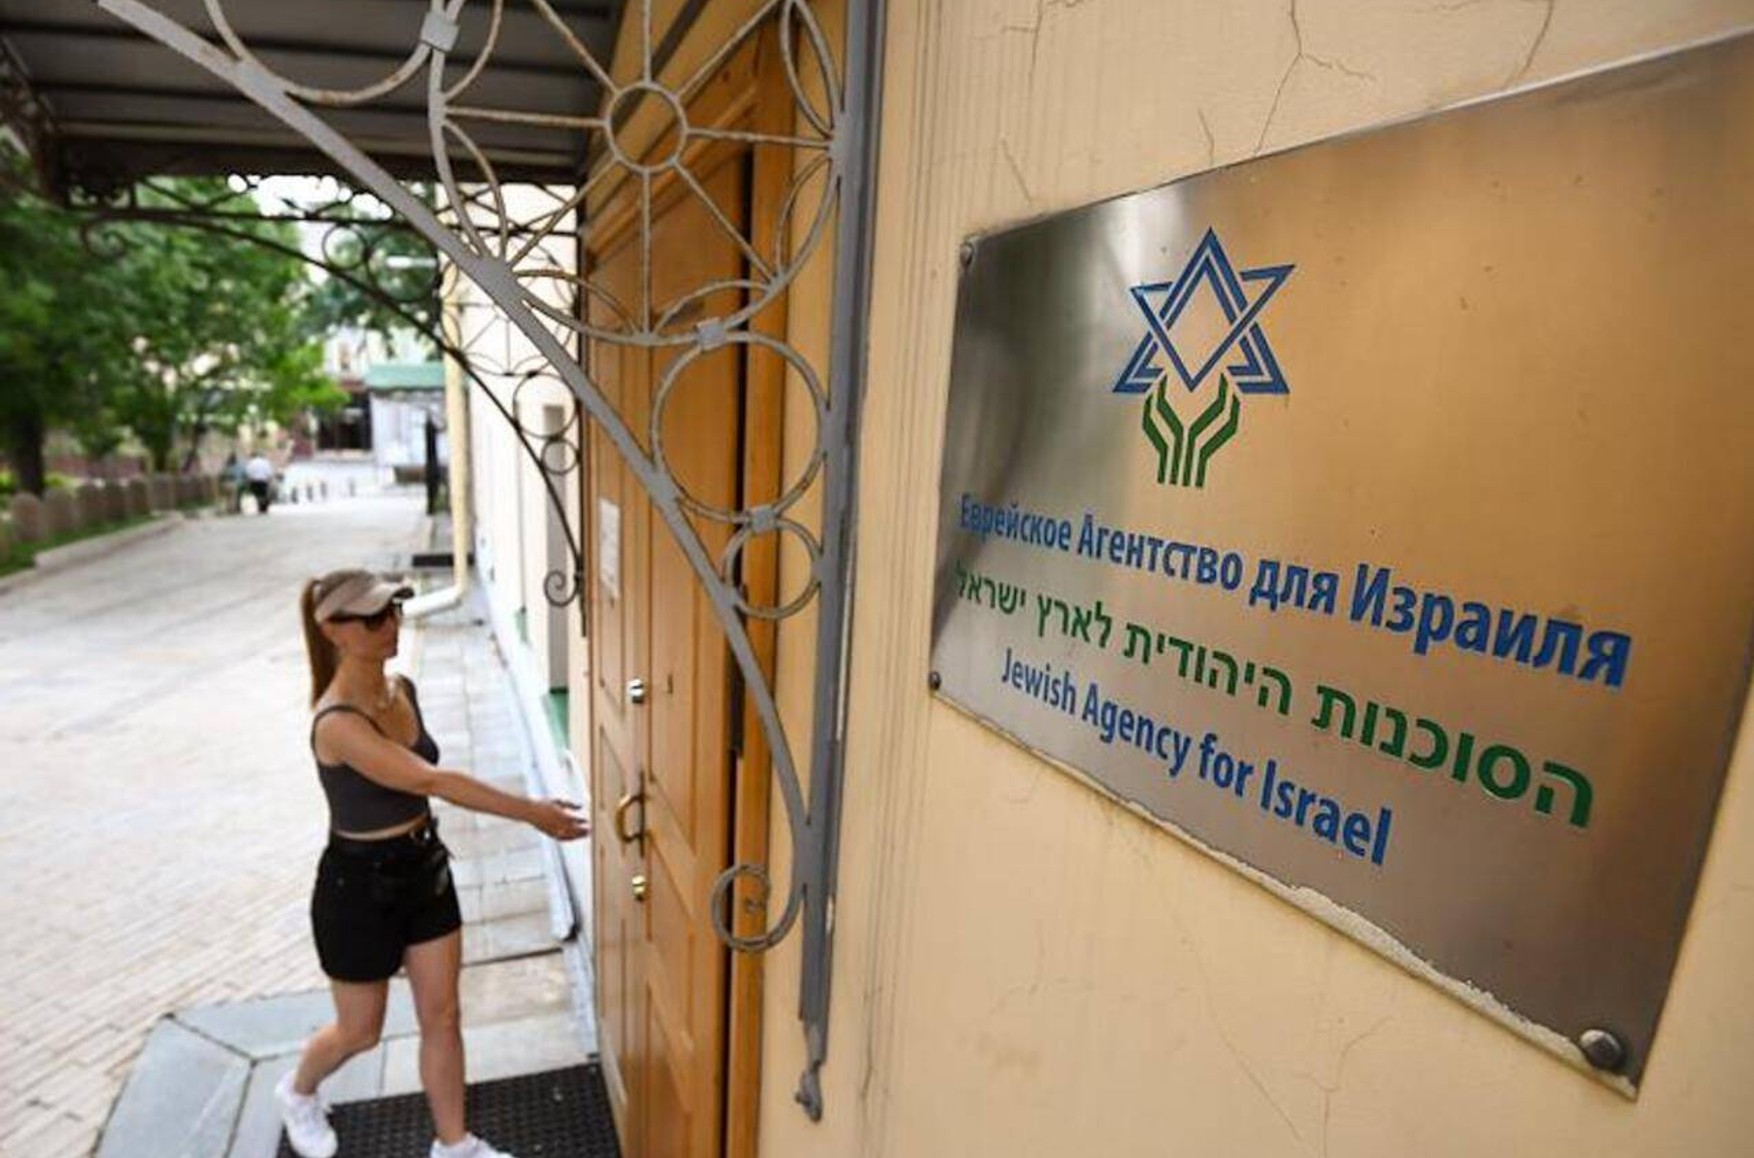 Еврейское агентство «Сохнут» планирует перенести в Израиль свой московский офис. Ранее Минюст потребовал его ликвидации